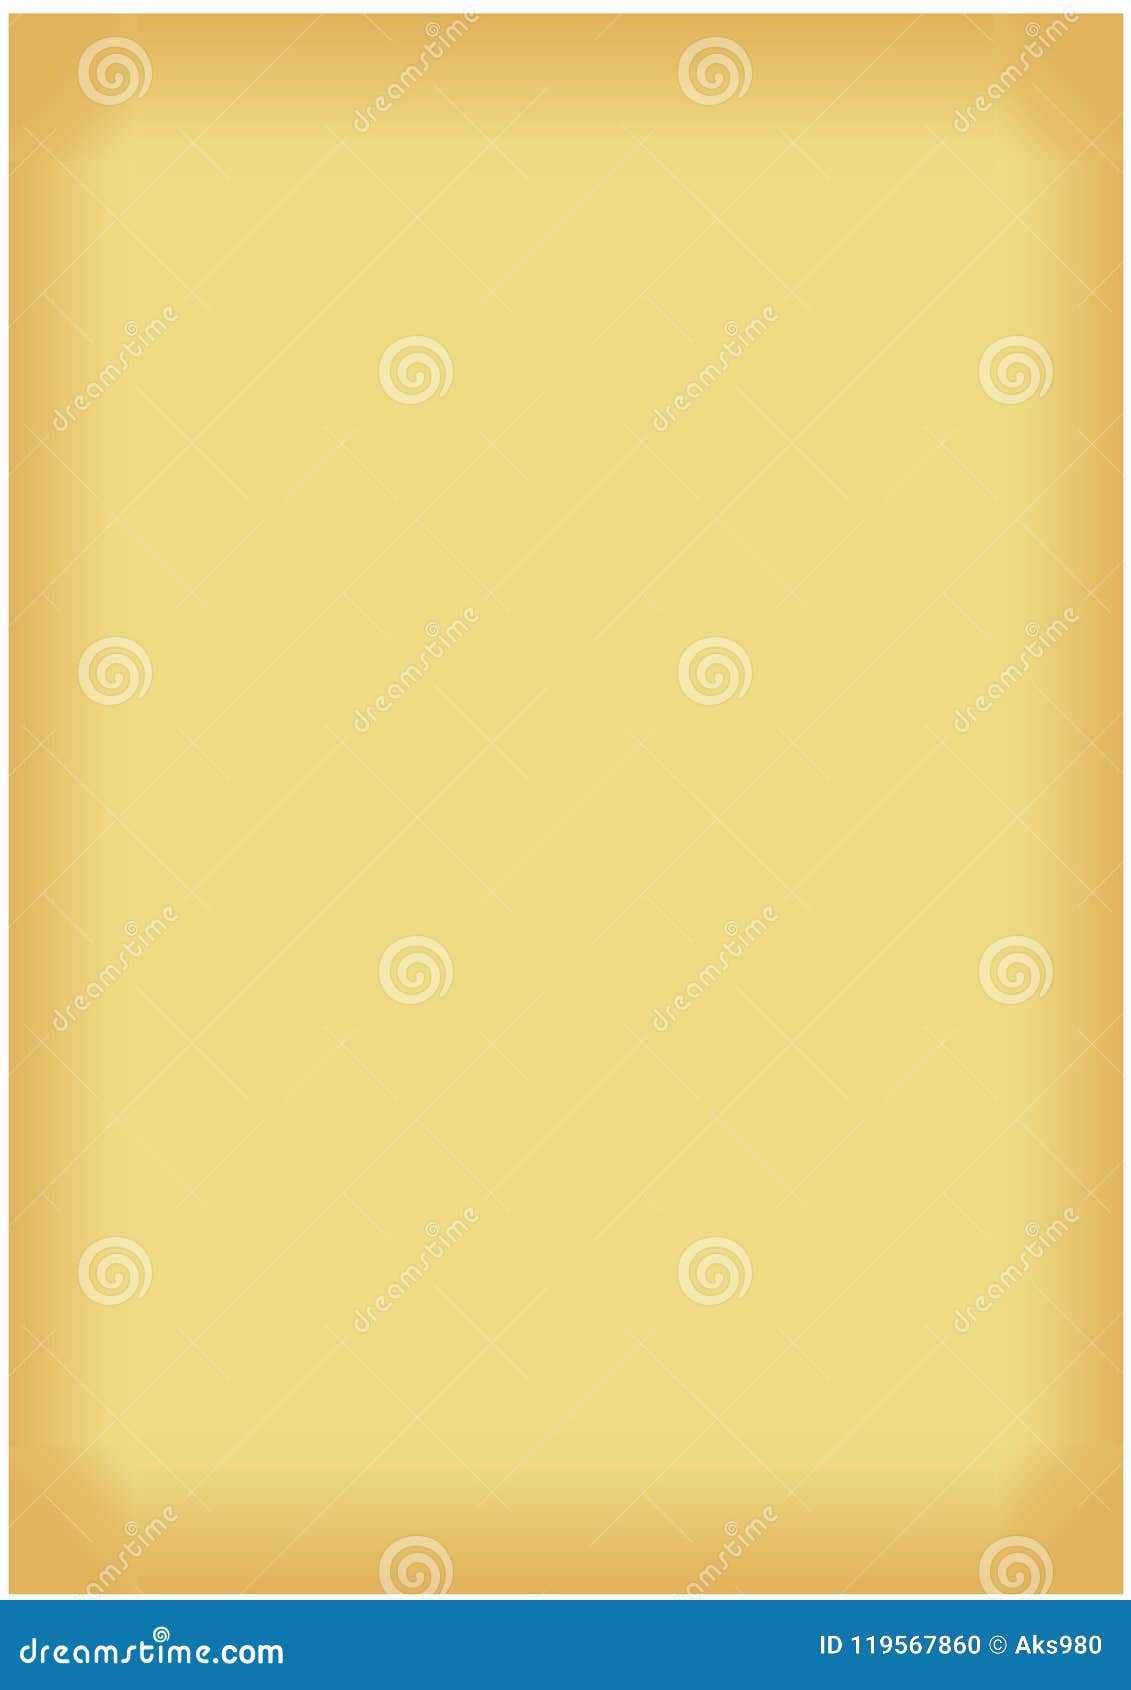 Old Golden Paper Frame A4 Size Ratio Texture Background Illustration Stock  Vector - Illustration of border, orange: 119567860